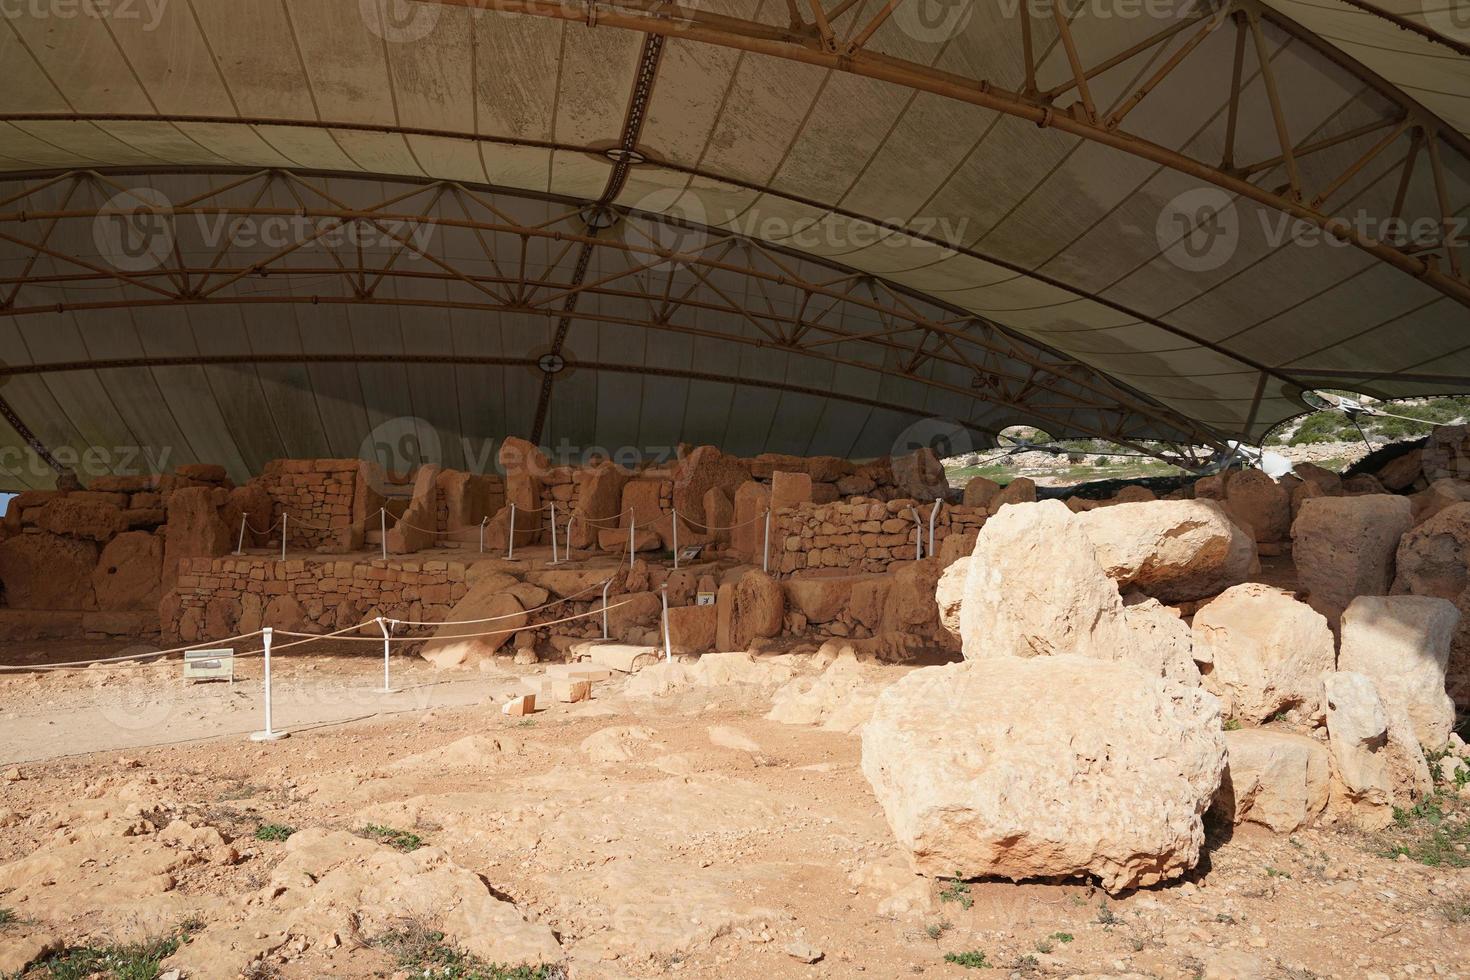 malta megalitischer tempel archäologische stätte foto